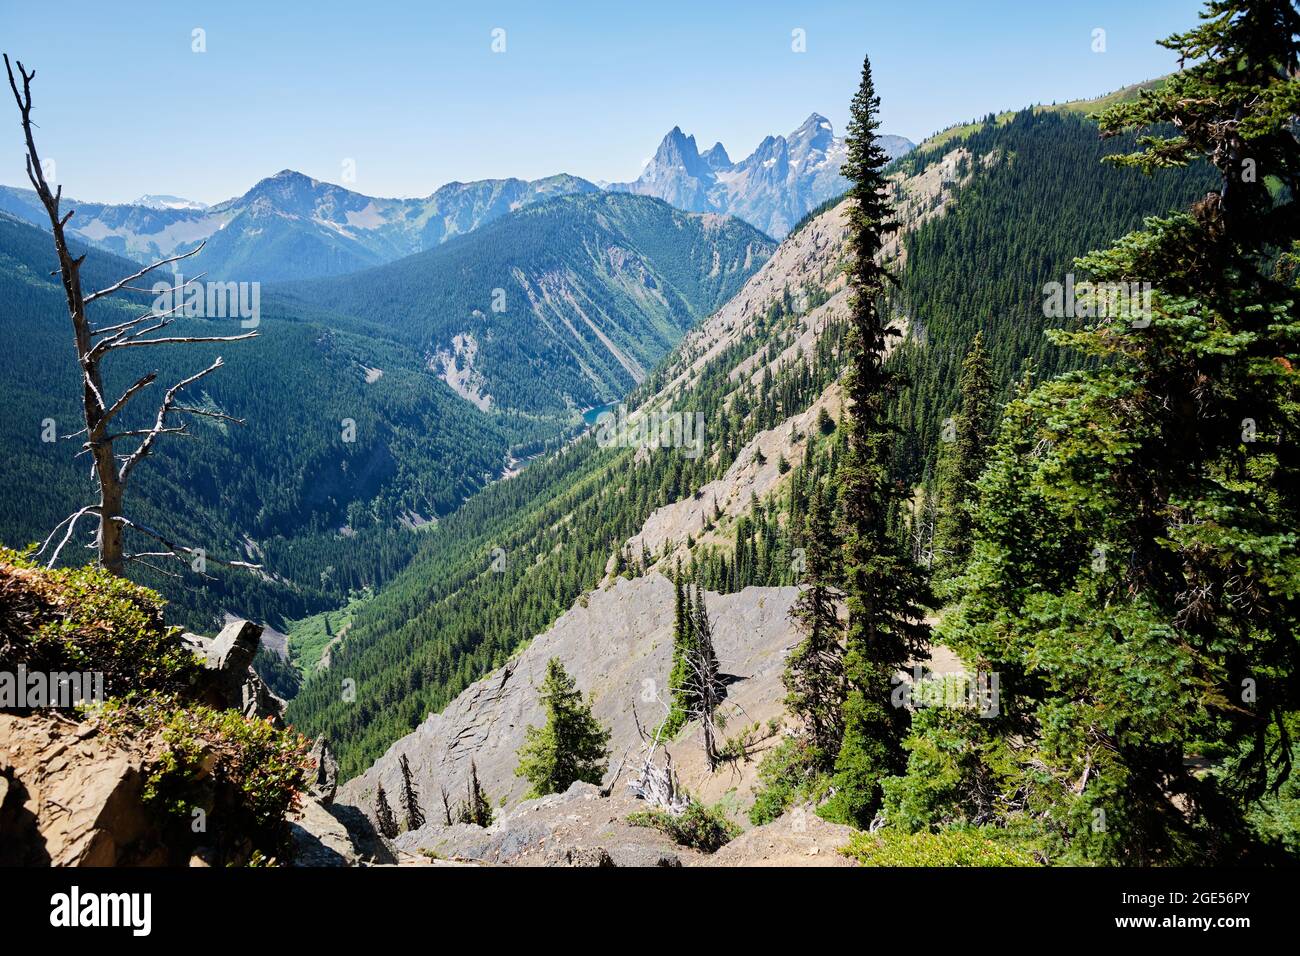 Vista desde Skyline Trail, Manning Park, BC. Laderas boscosas empinadas caen hasta el lago Thunder. En la distancia se encuentra el pico Hozomeen. Foto de stock